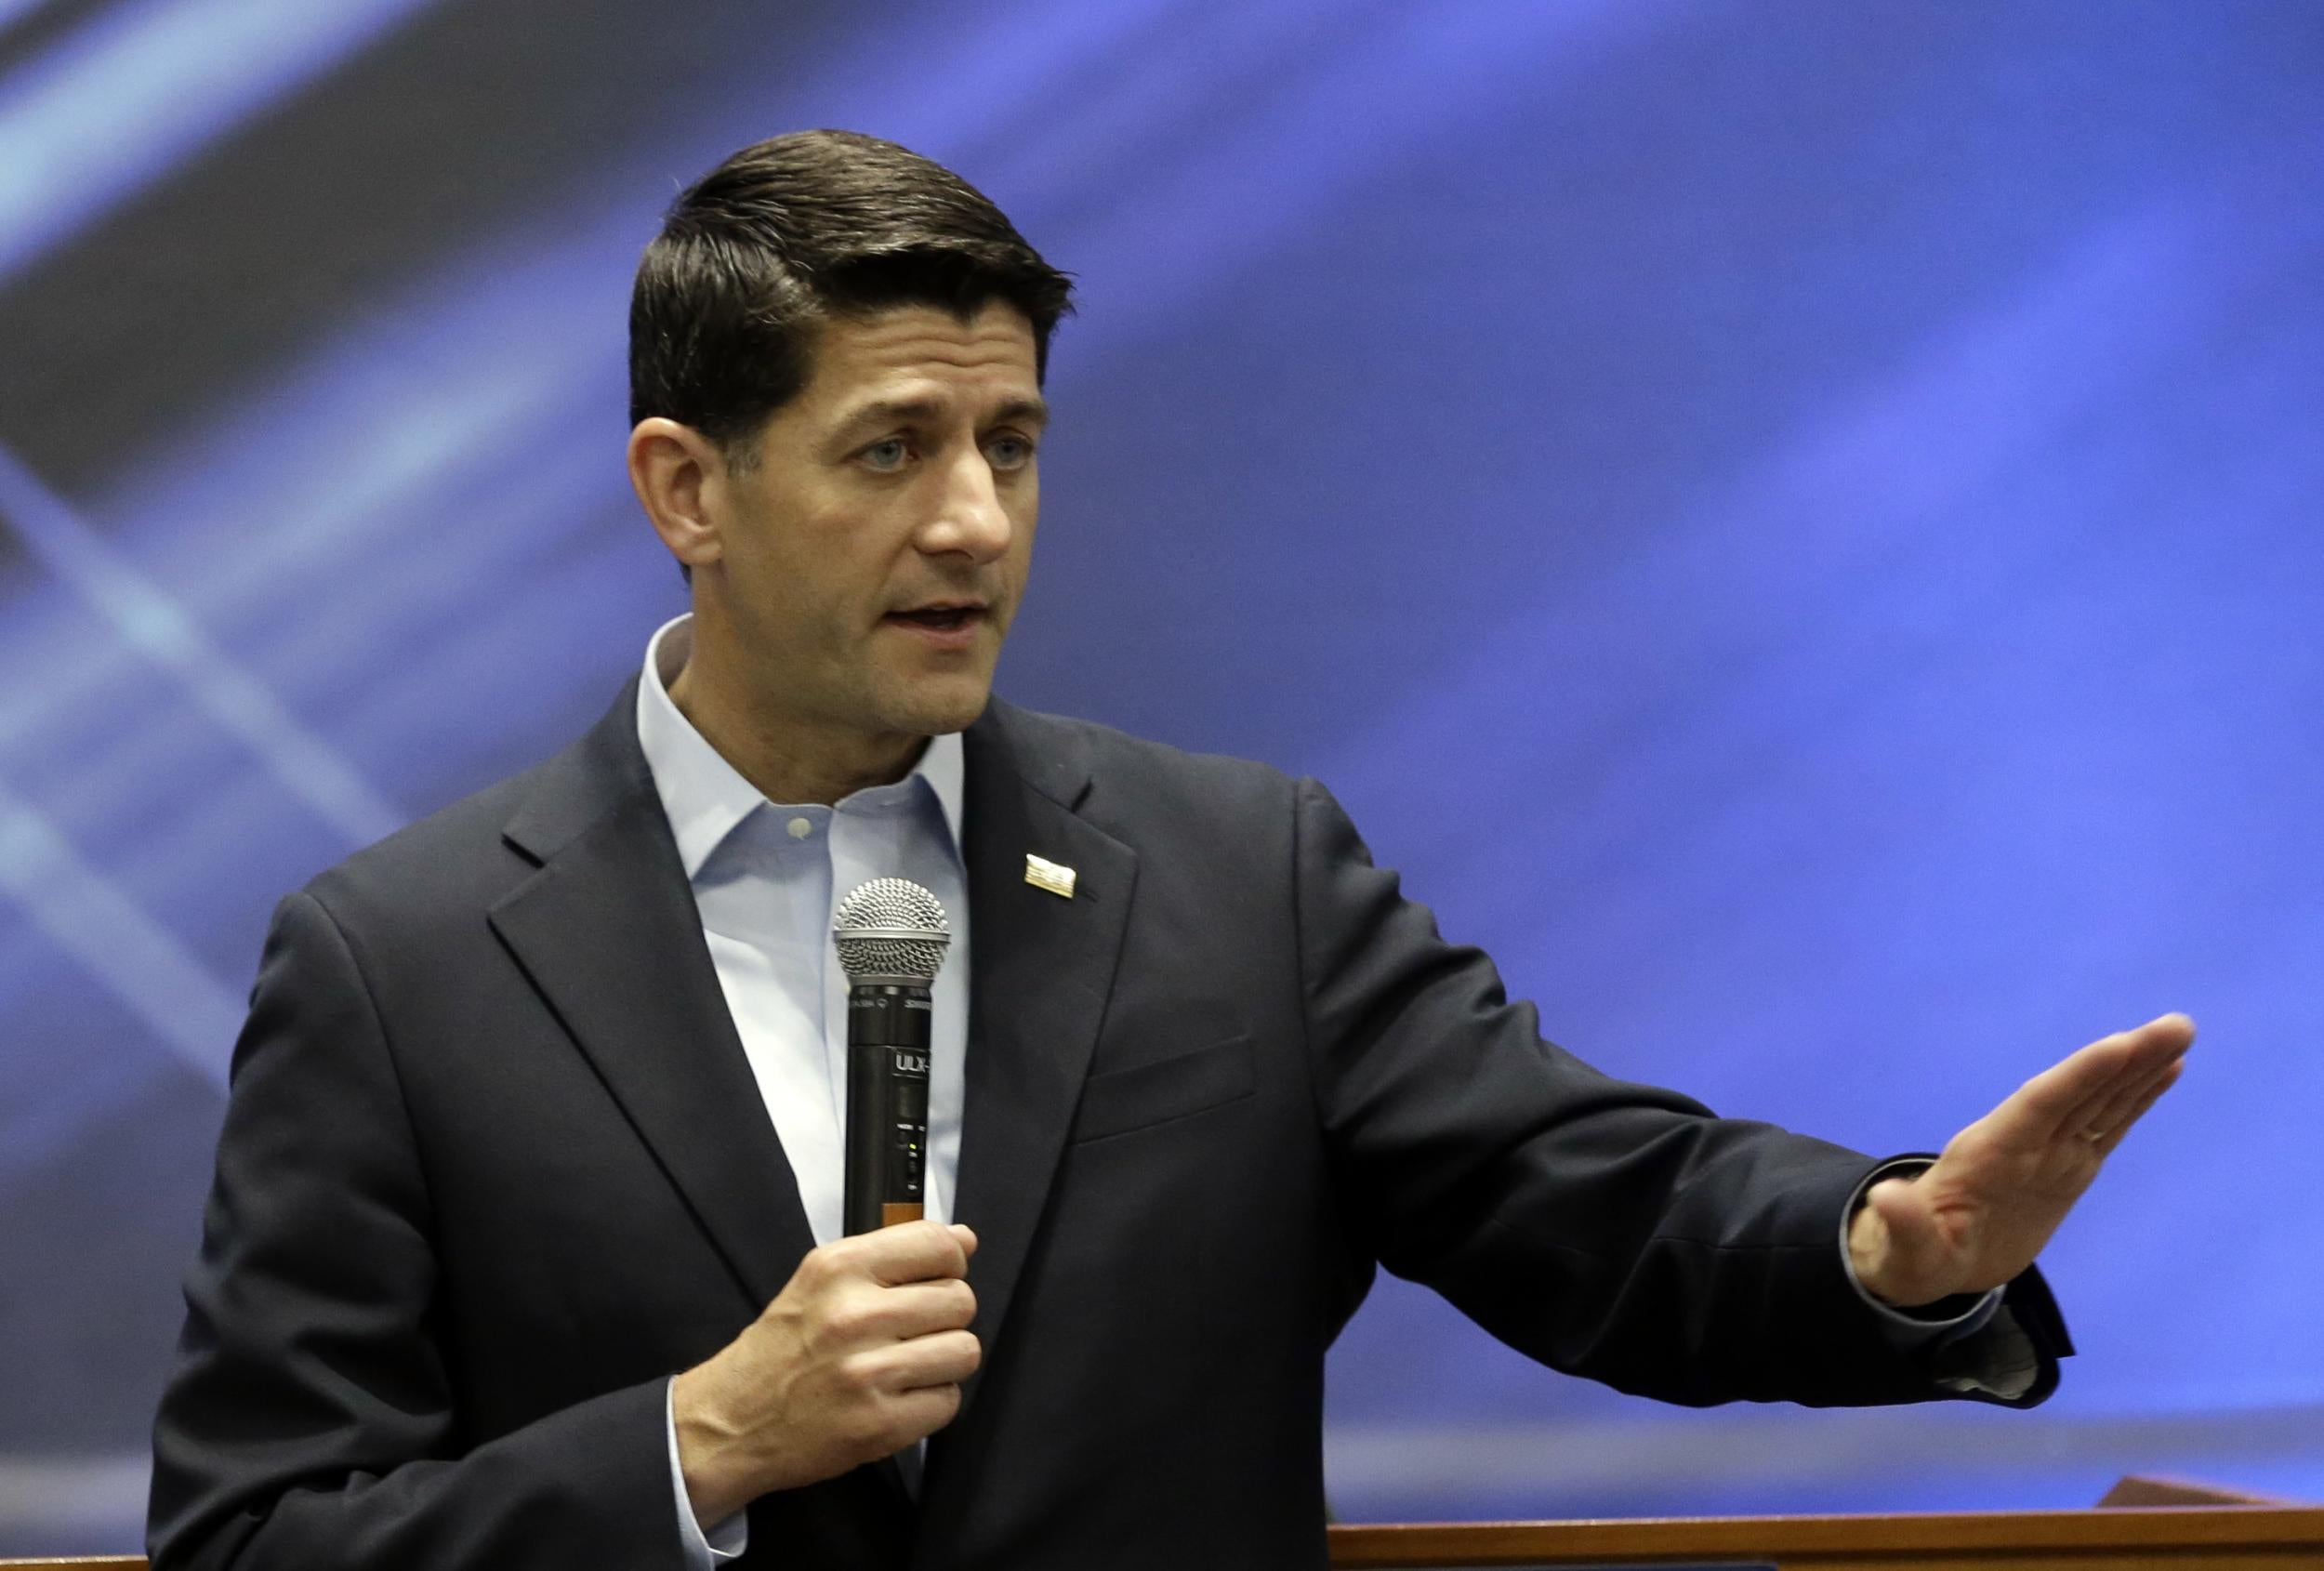 House speaker Paul Ryan said he disagreed with Joe Arpaio's pardon